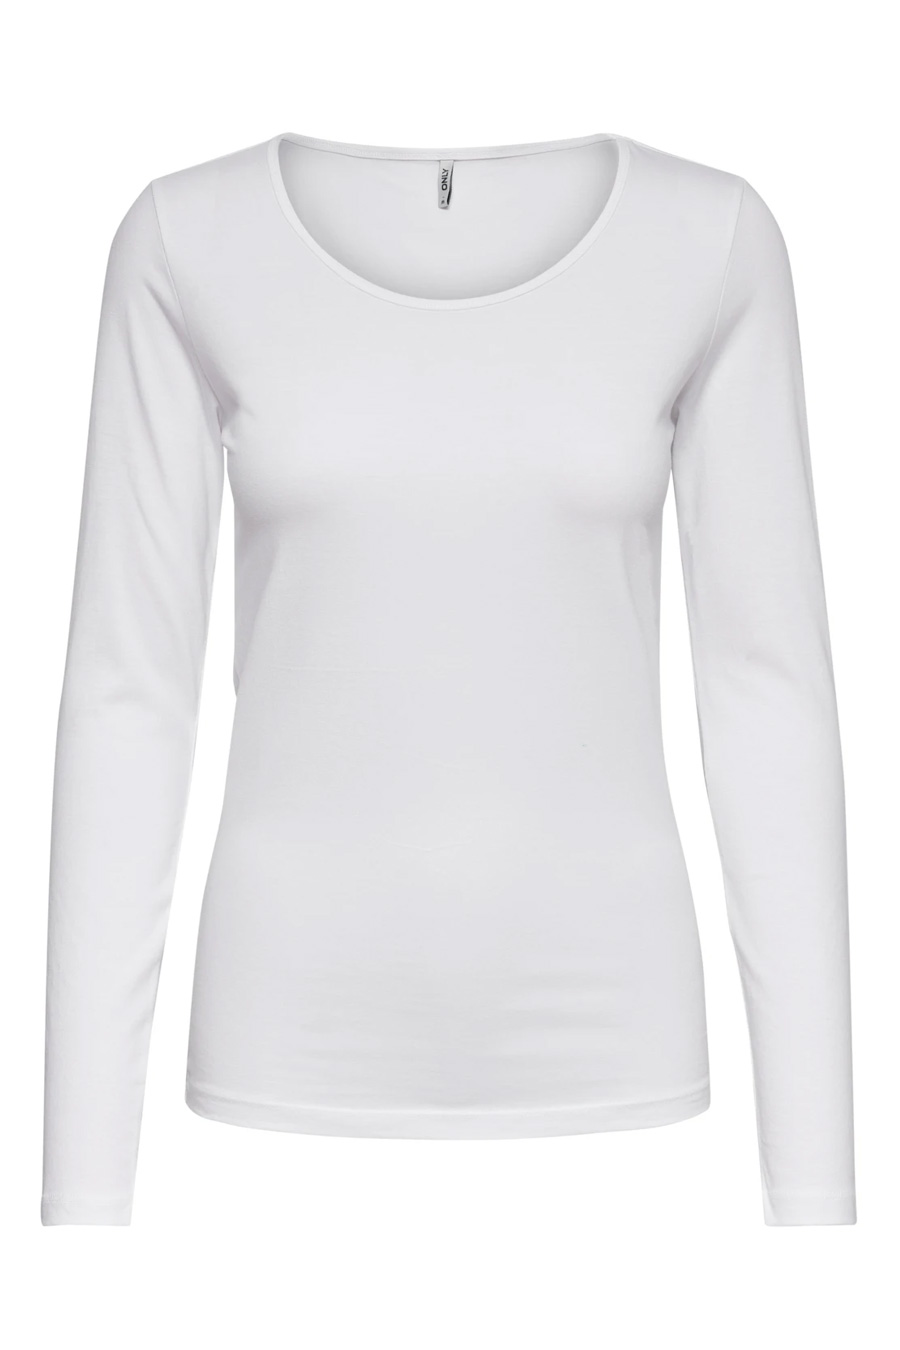 Pitkähihainen T-paita ONLY 15204712-White